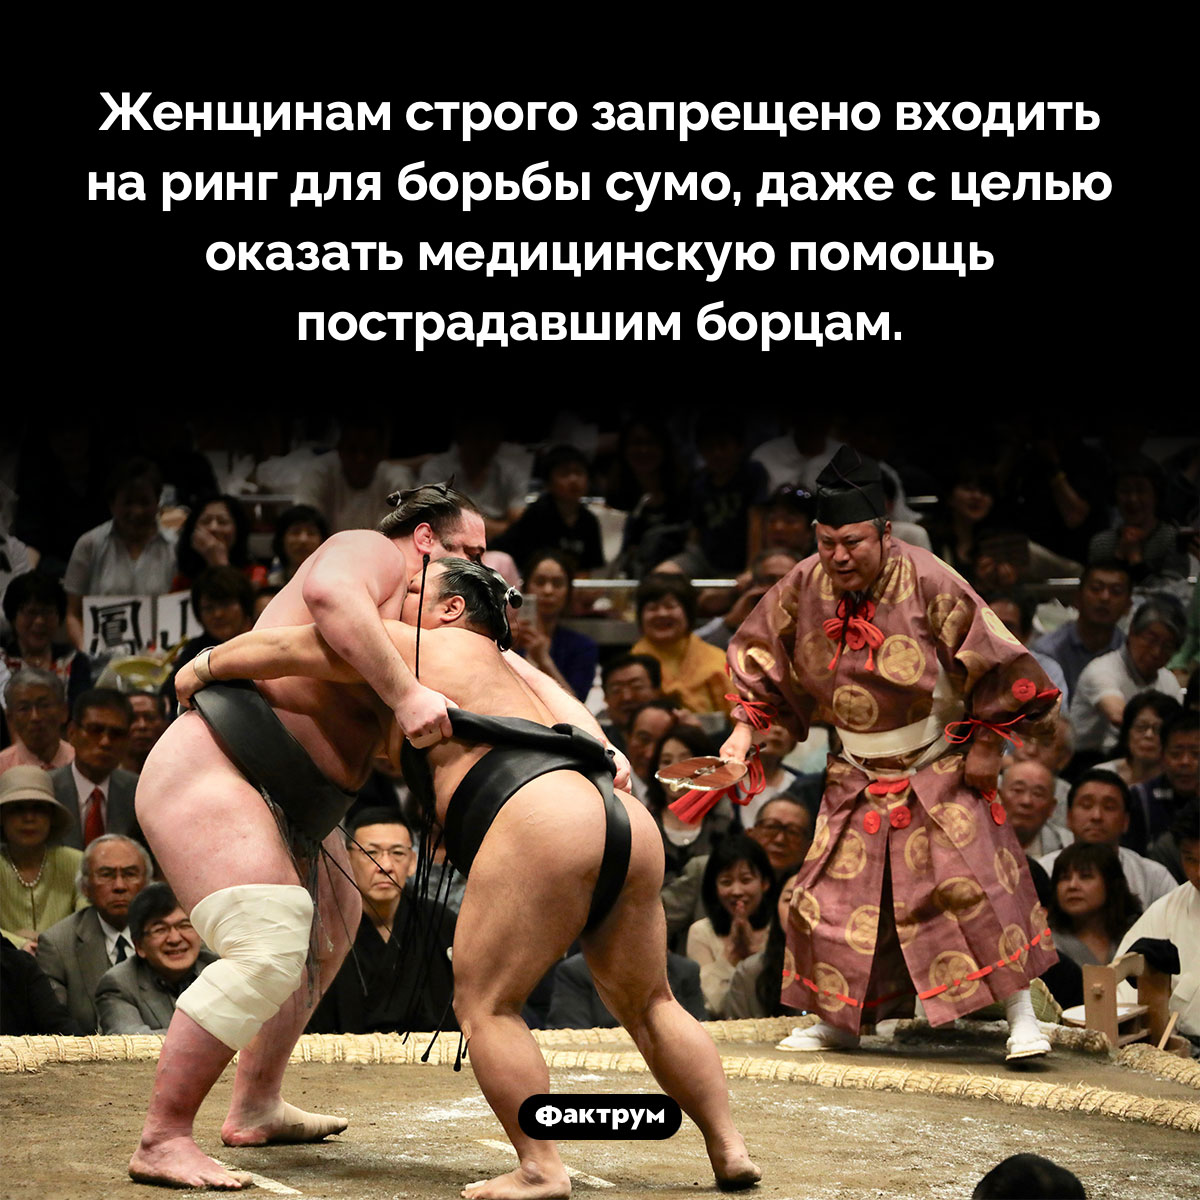 Женщины и сумо. Женщинам строго запрещено входить на ринг для борьбы сумо, даже с целью оказать медицинскую помощь пострадавшим борцам.